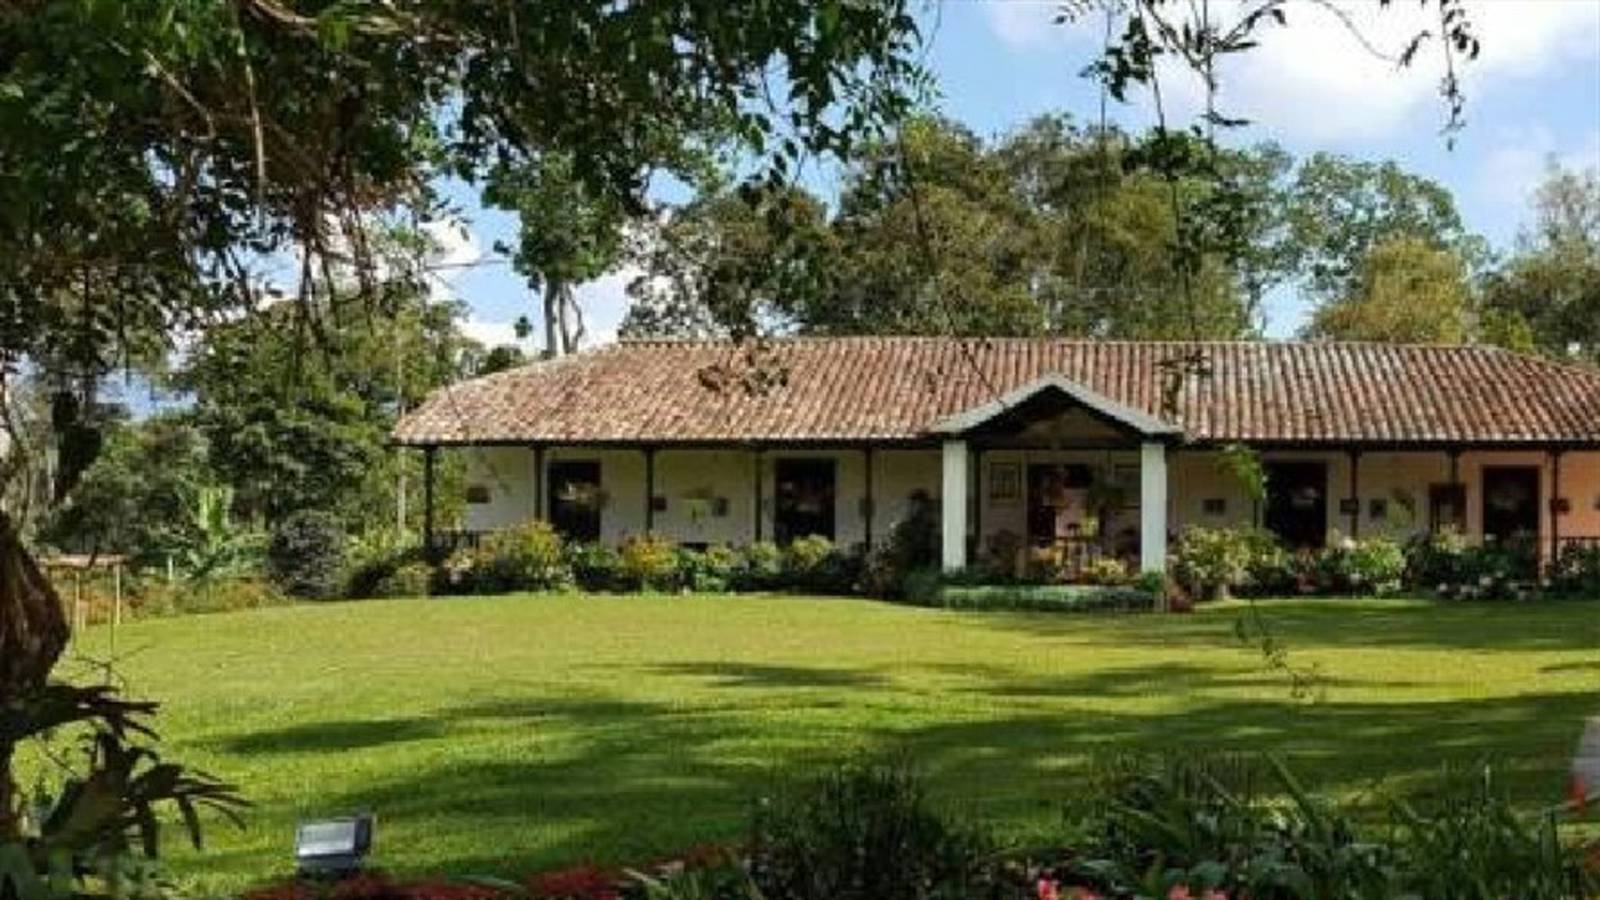 Hacienda El que produce café Mesa de Los Santos, entre mejores del mundo